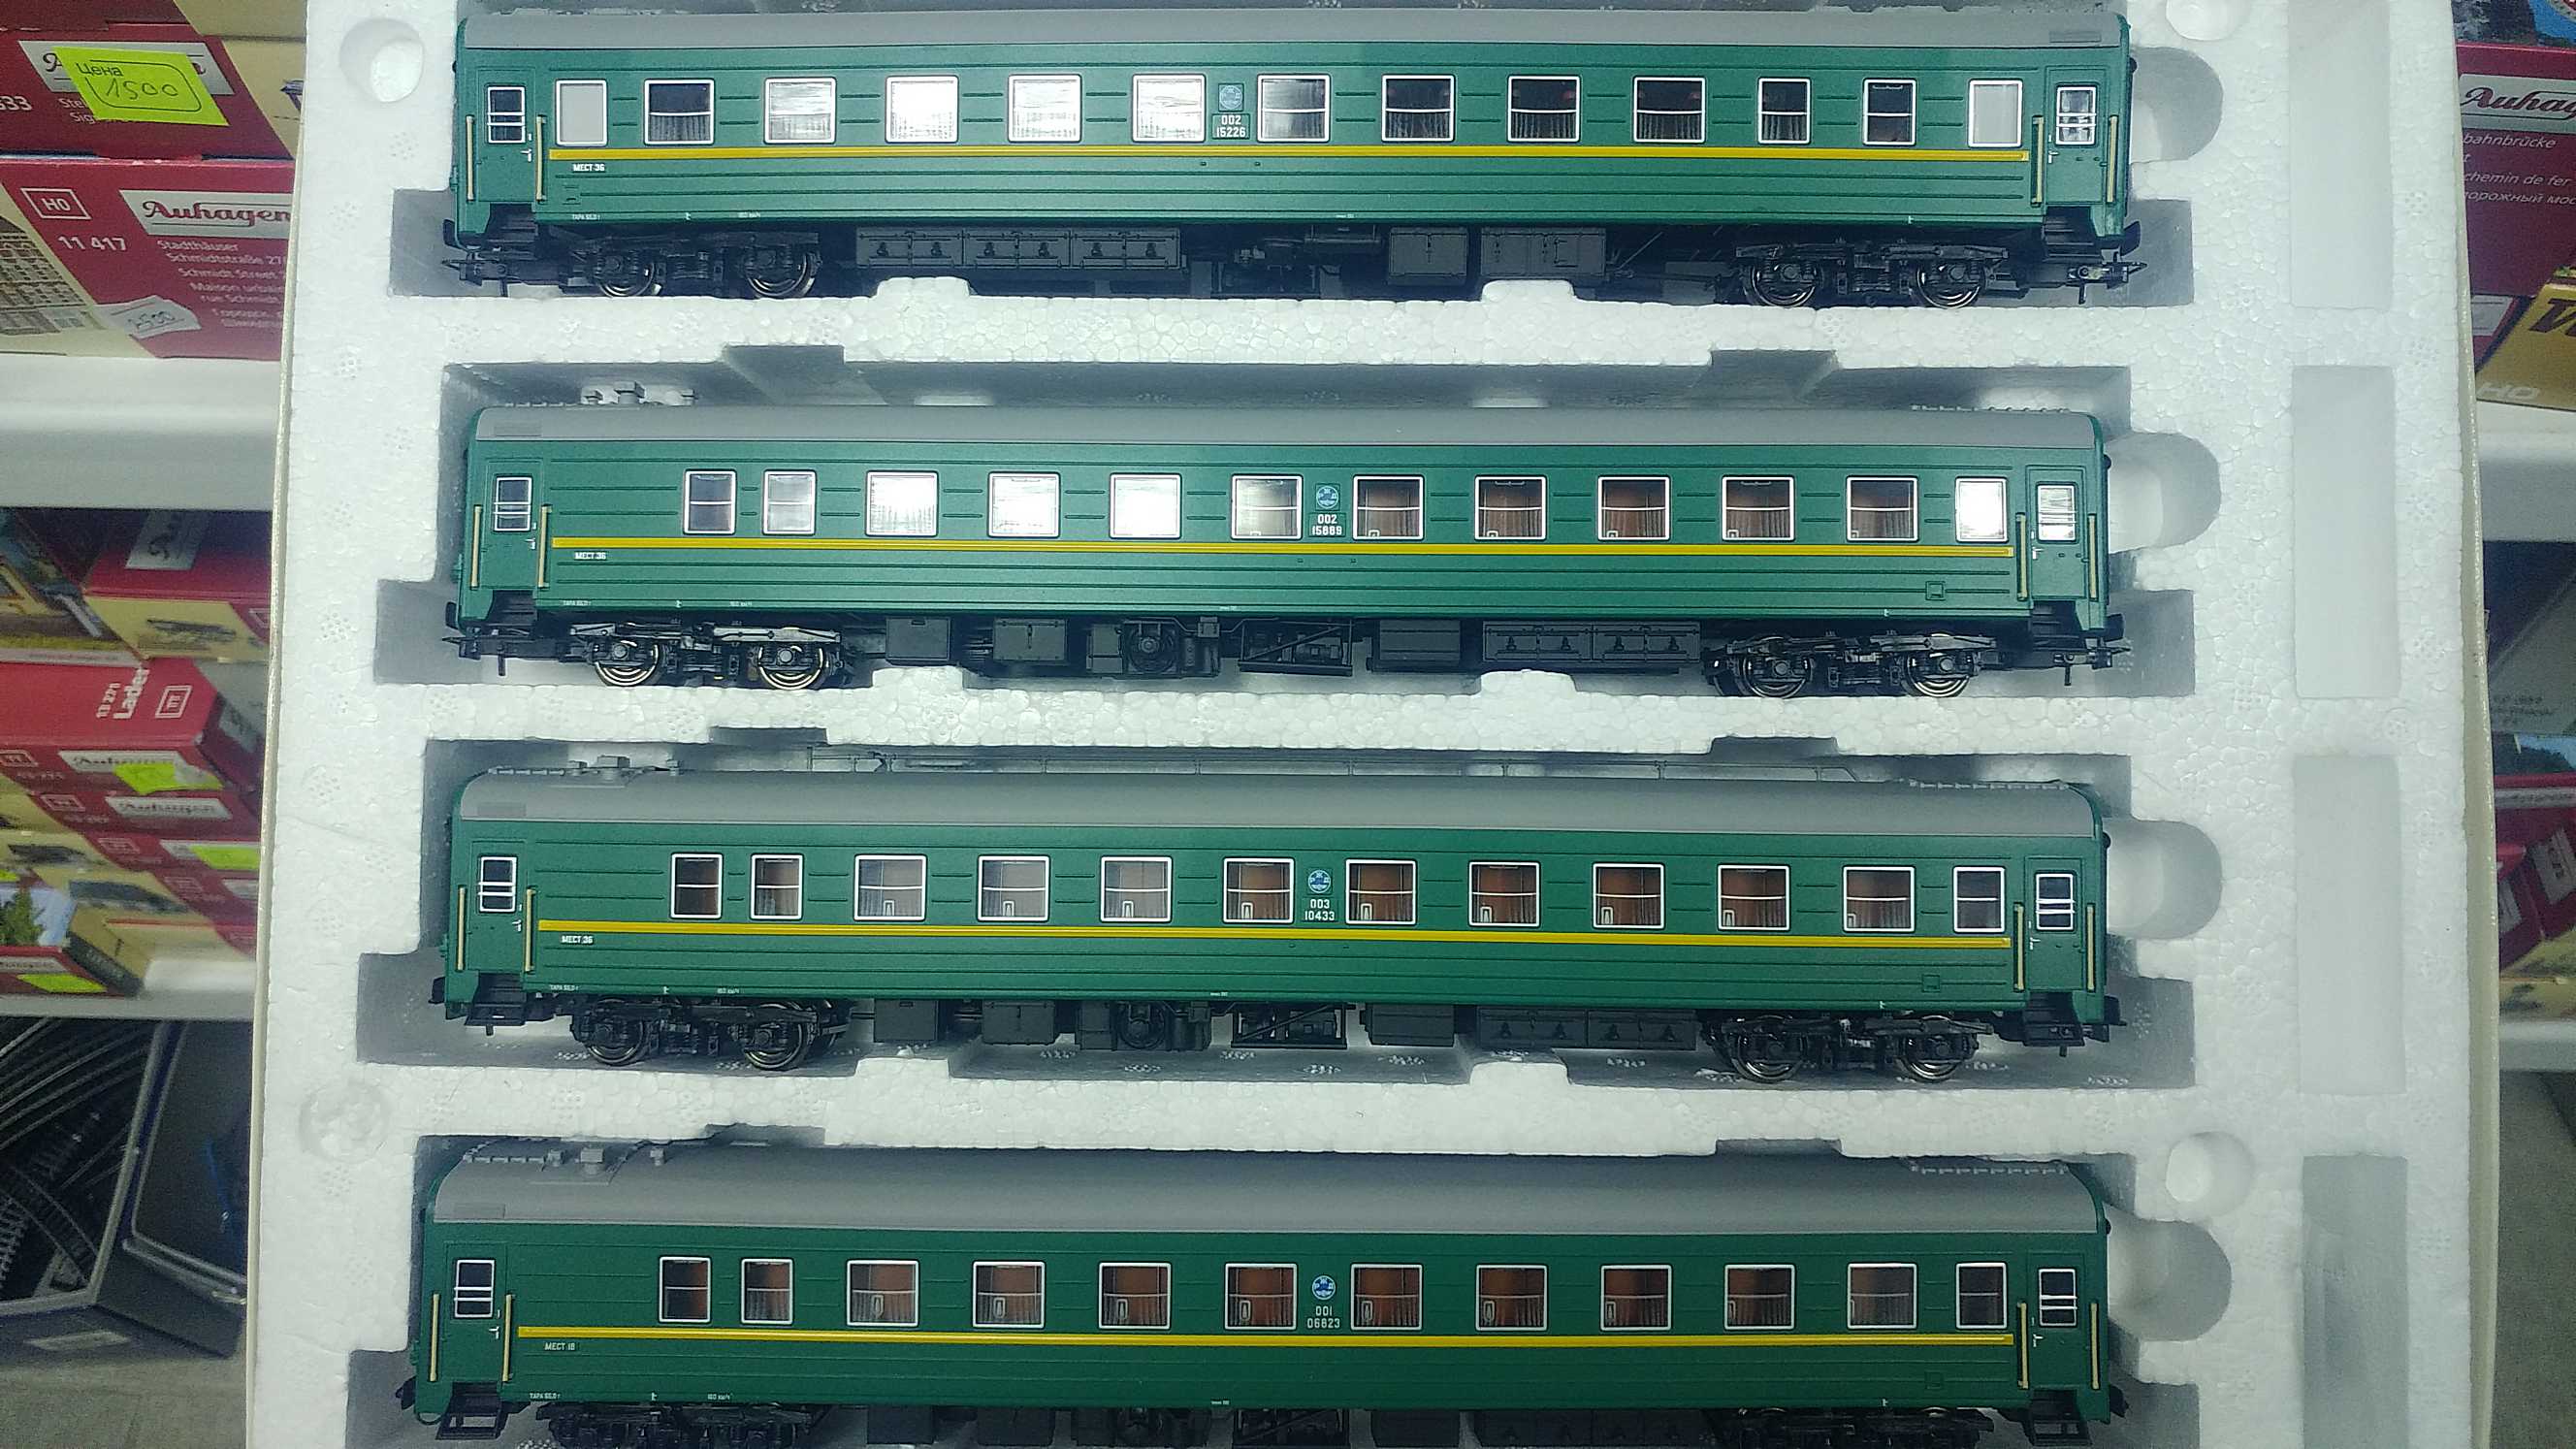 Билеты на поезд тихий дон. Евротрейн пассажирские вагоны. Вагоны Евротрейн 1/87. Евротрейн модели вагонов РЖД. Евротрейн железная дорога.